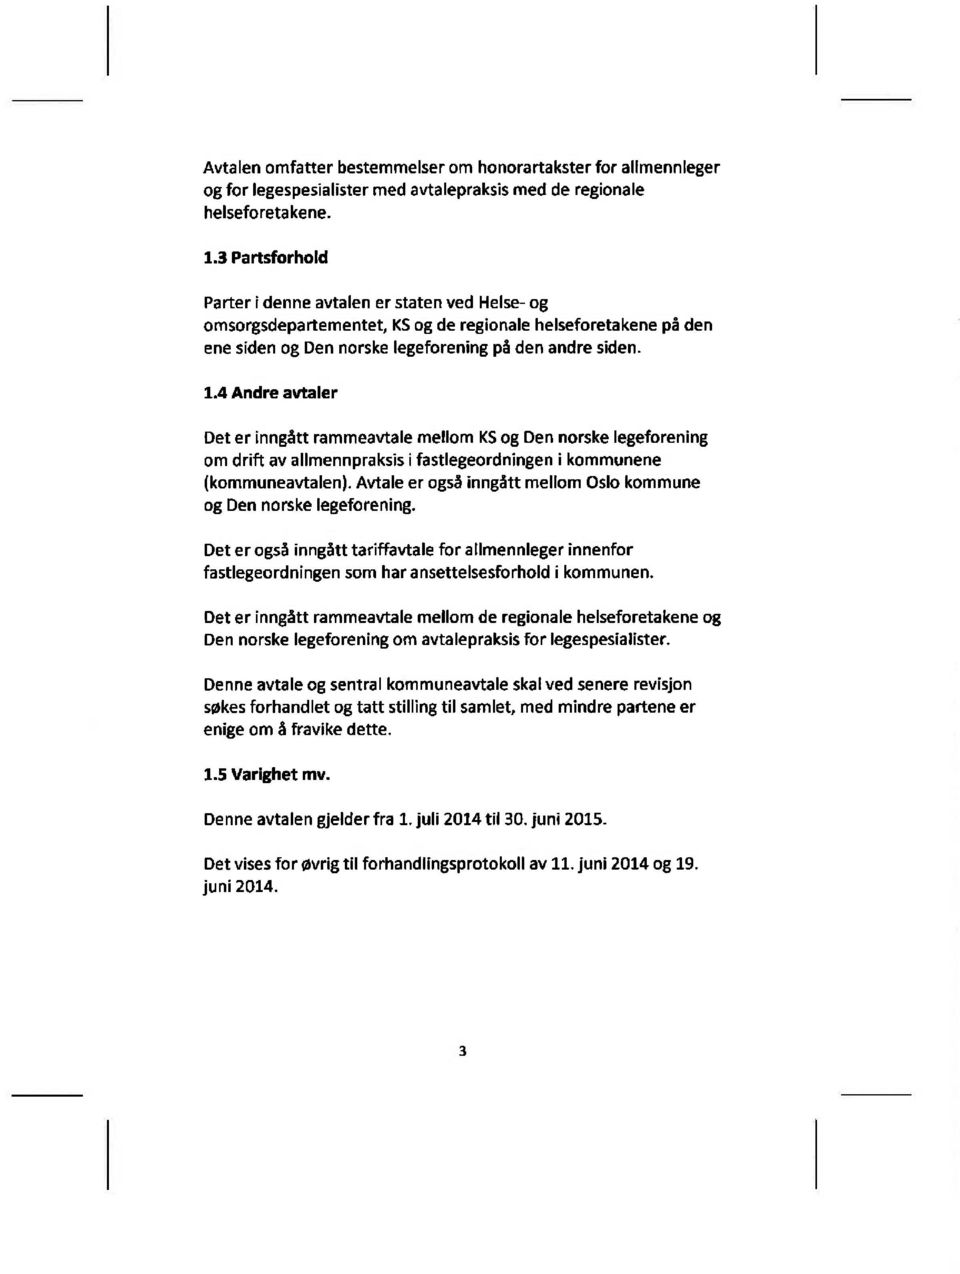 4 Andre avtaler Det er inngått rammeawale mellom KS og Den norske legeforening om drift av allmennpraksis ifastlegeordningen i kommunene (kommuneavtalen).